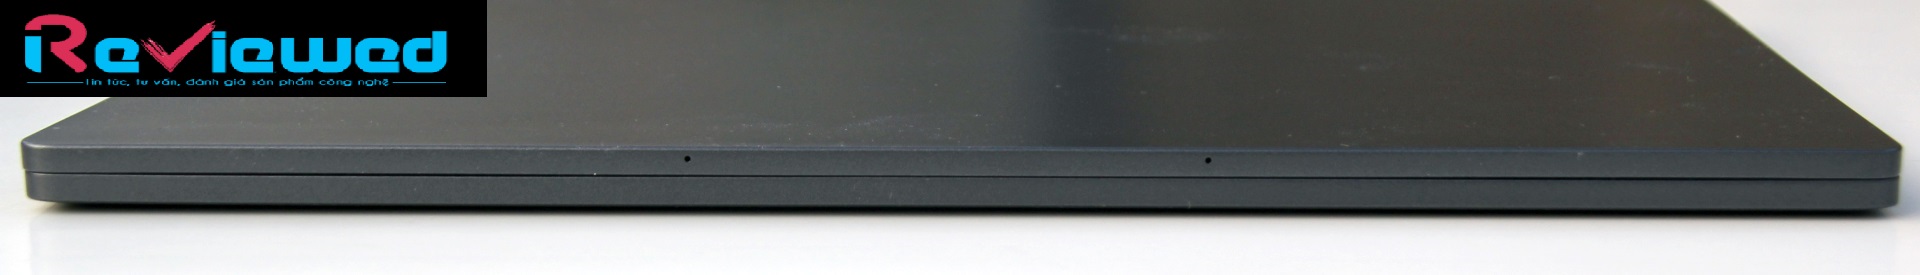 Đánh giá Lenovo Yoga Book C930: Laptop 3 trong 1 độc đáo, chuyên trang tư vấn về Laptop